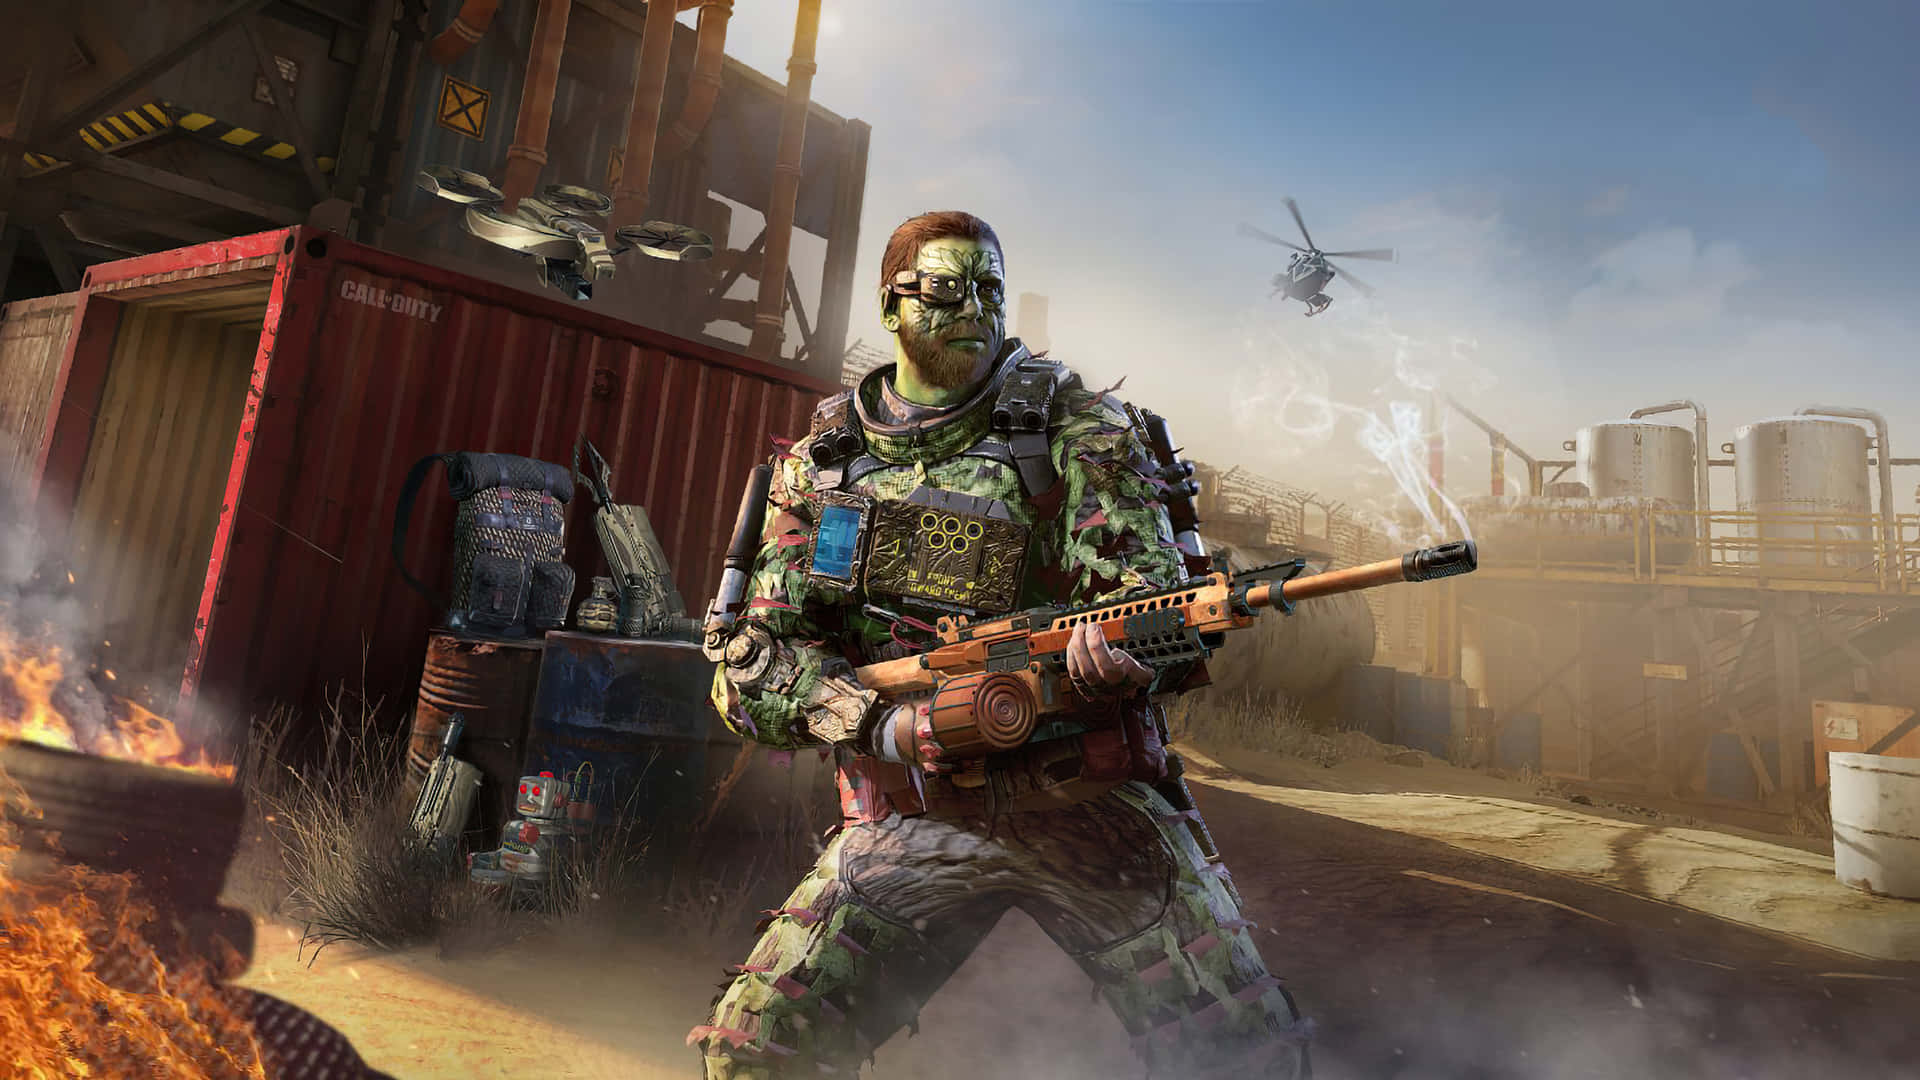 Guerre,battaglie, Armi E Altro Mentre Il Call Of Duty 2020 Si Avvicina! Sfondo